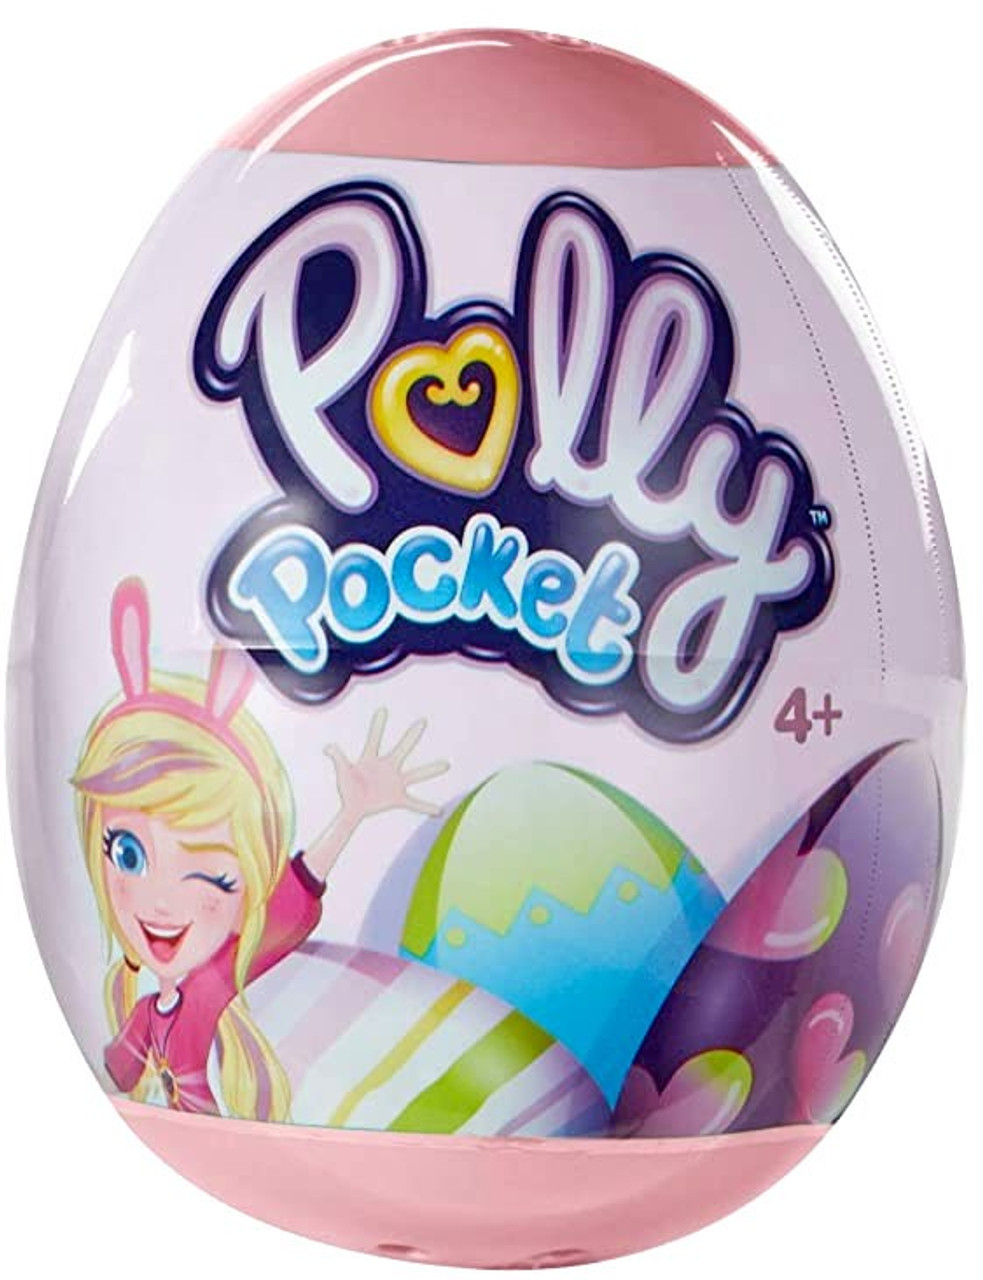 Polly Pocket Easter Egg Mystery Pack 1 Random Mini Polly Doll Mattel Toys Toywiz - roblox egg hunt kit